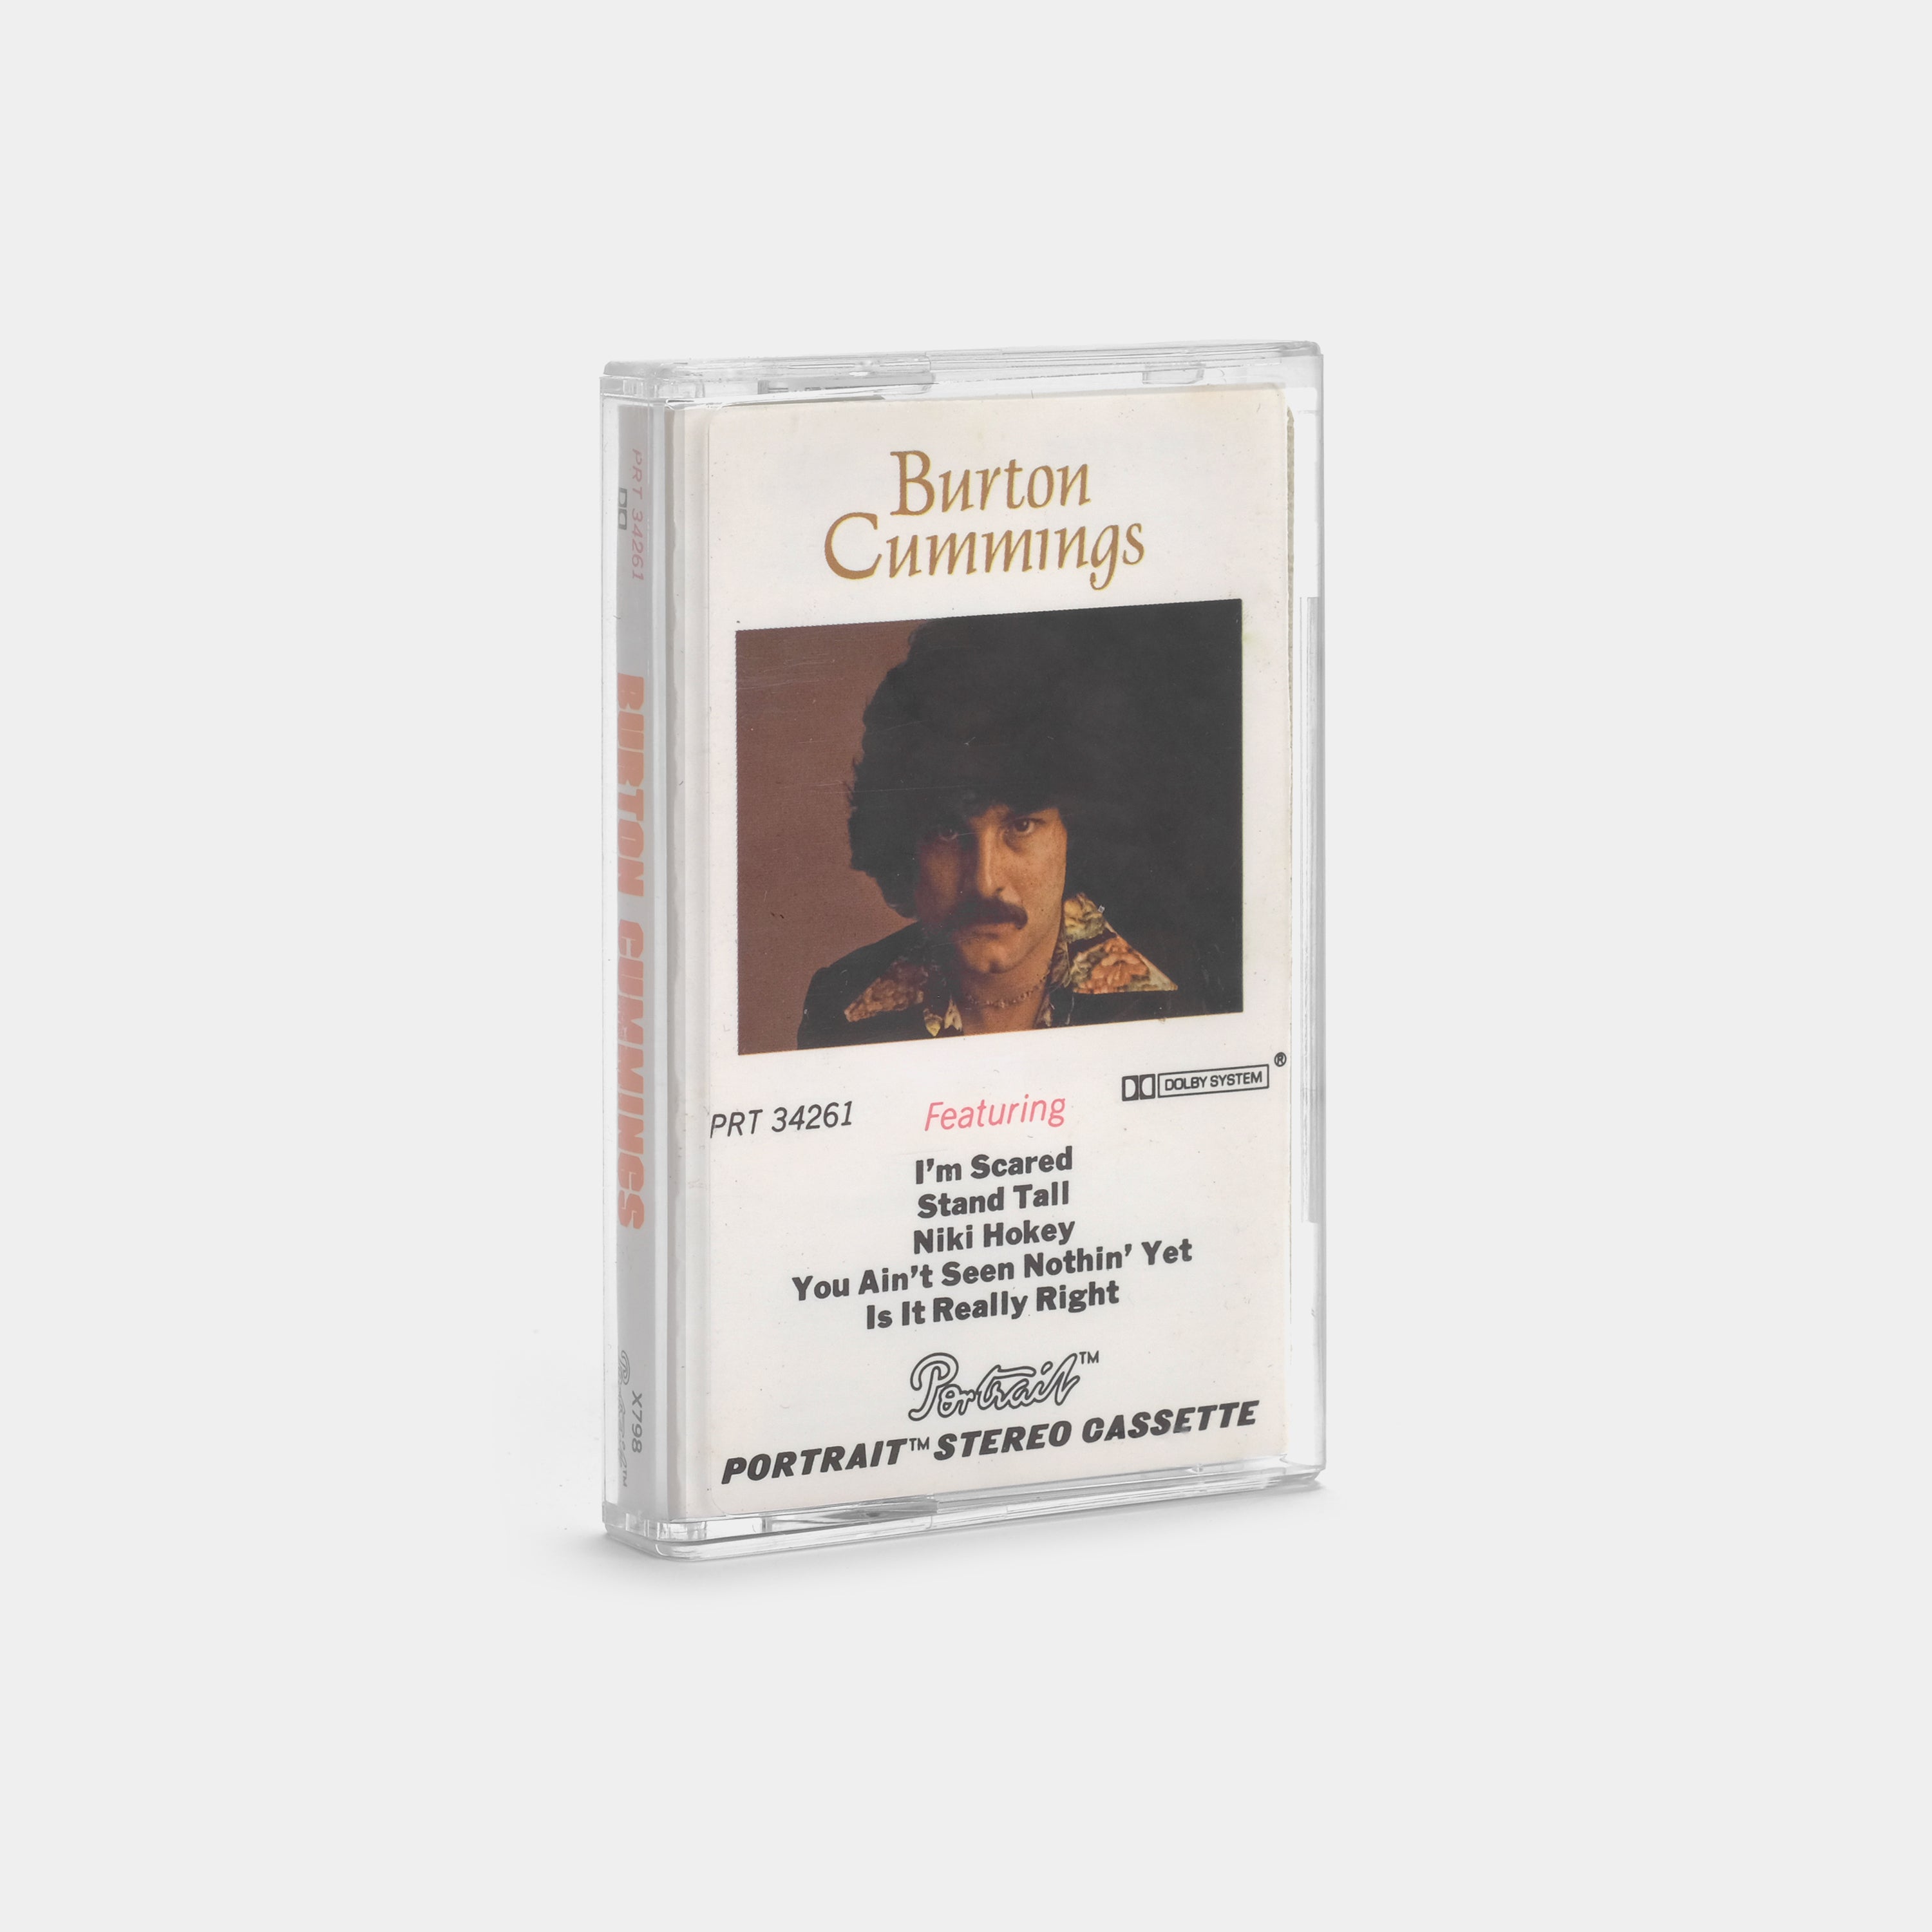 Burton Cummings - Burton Cummings Cassette Tape